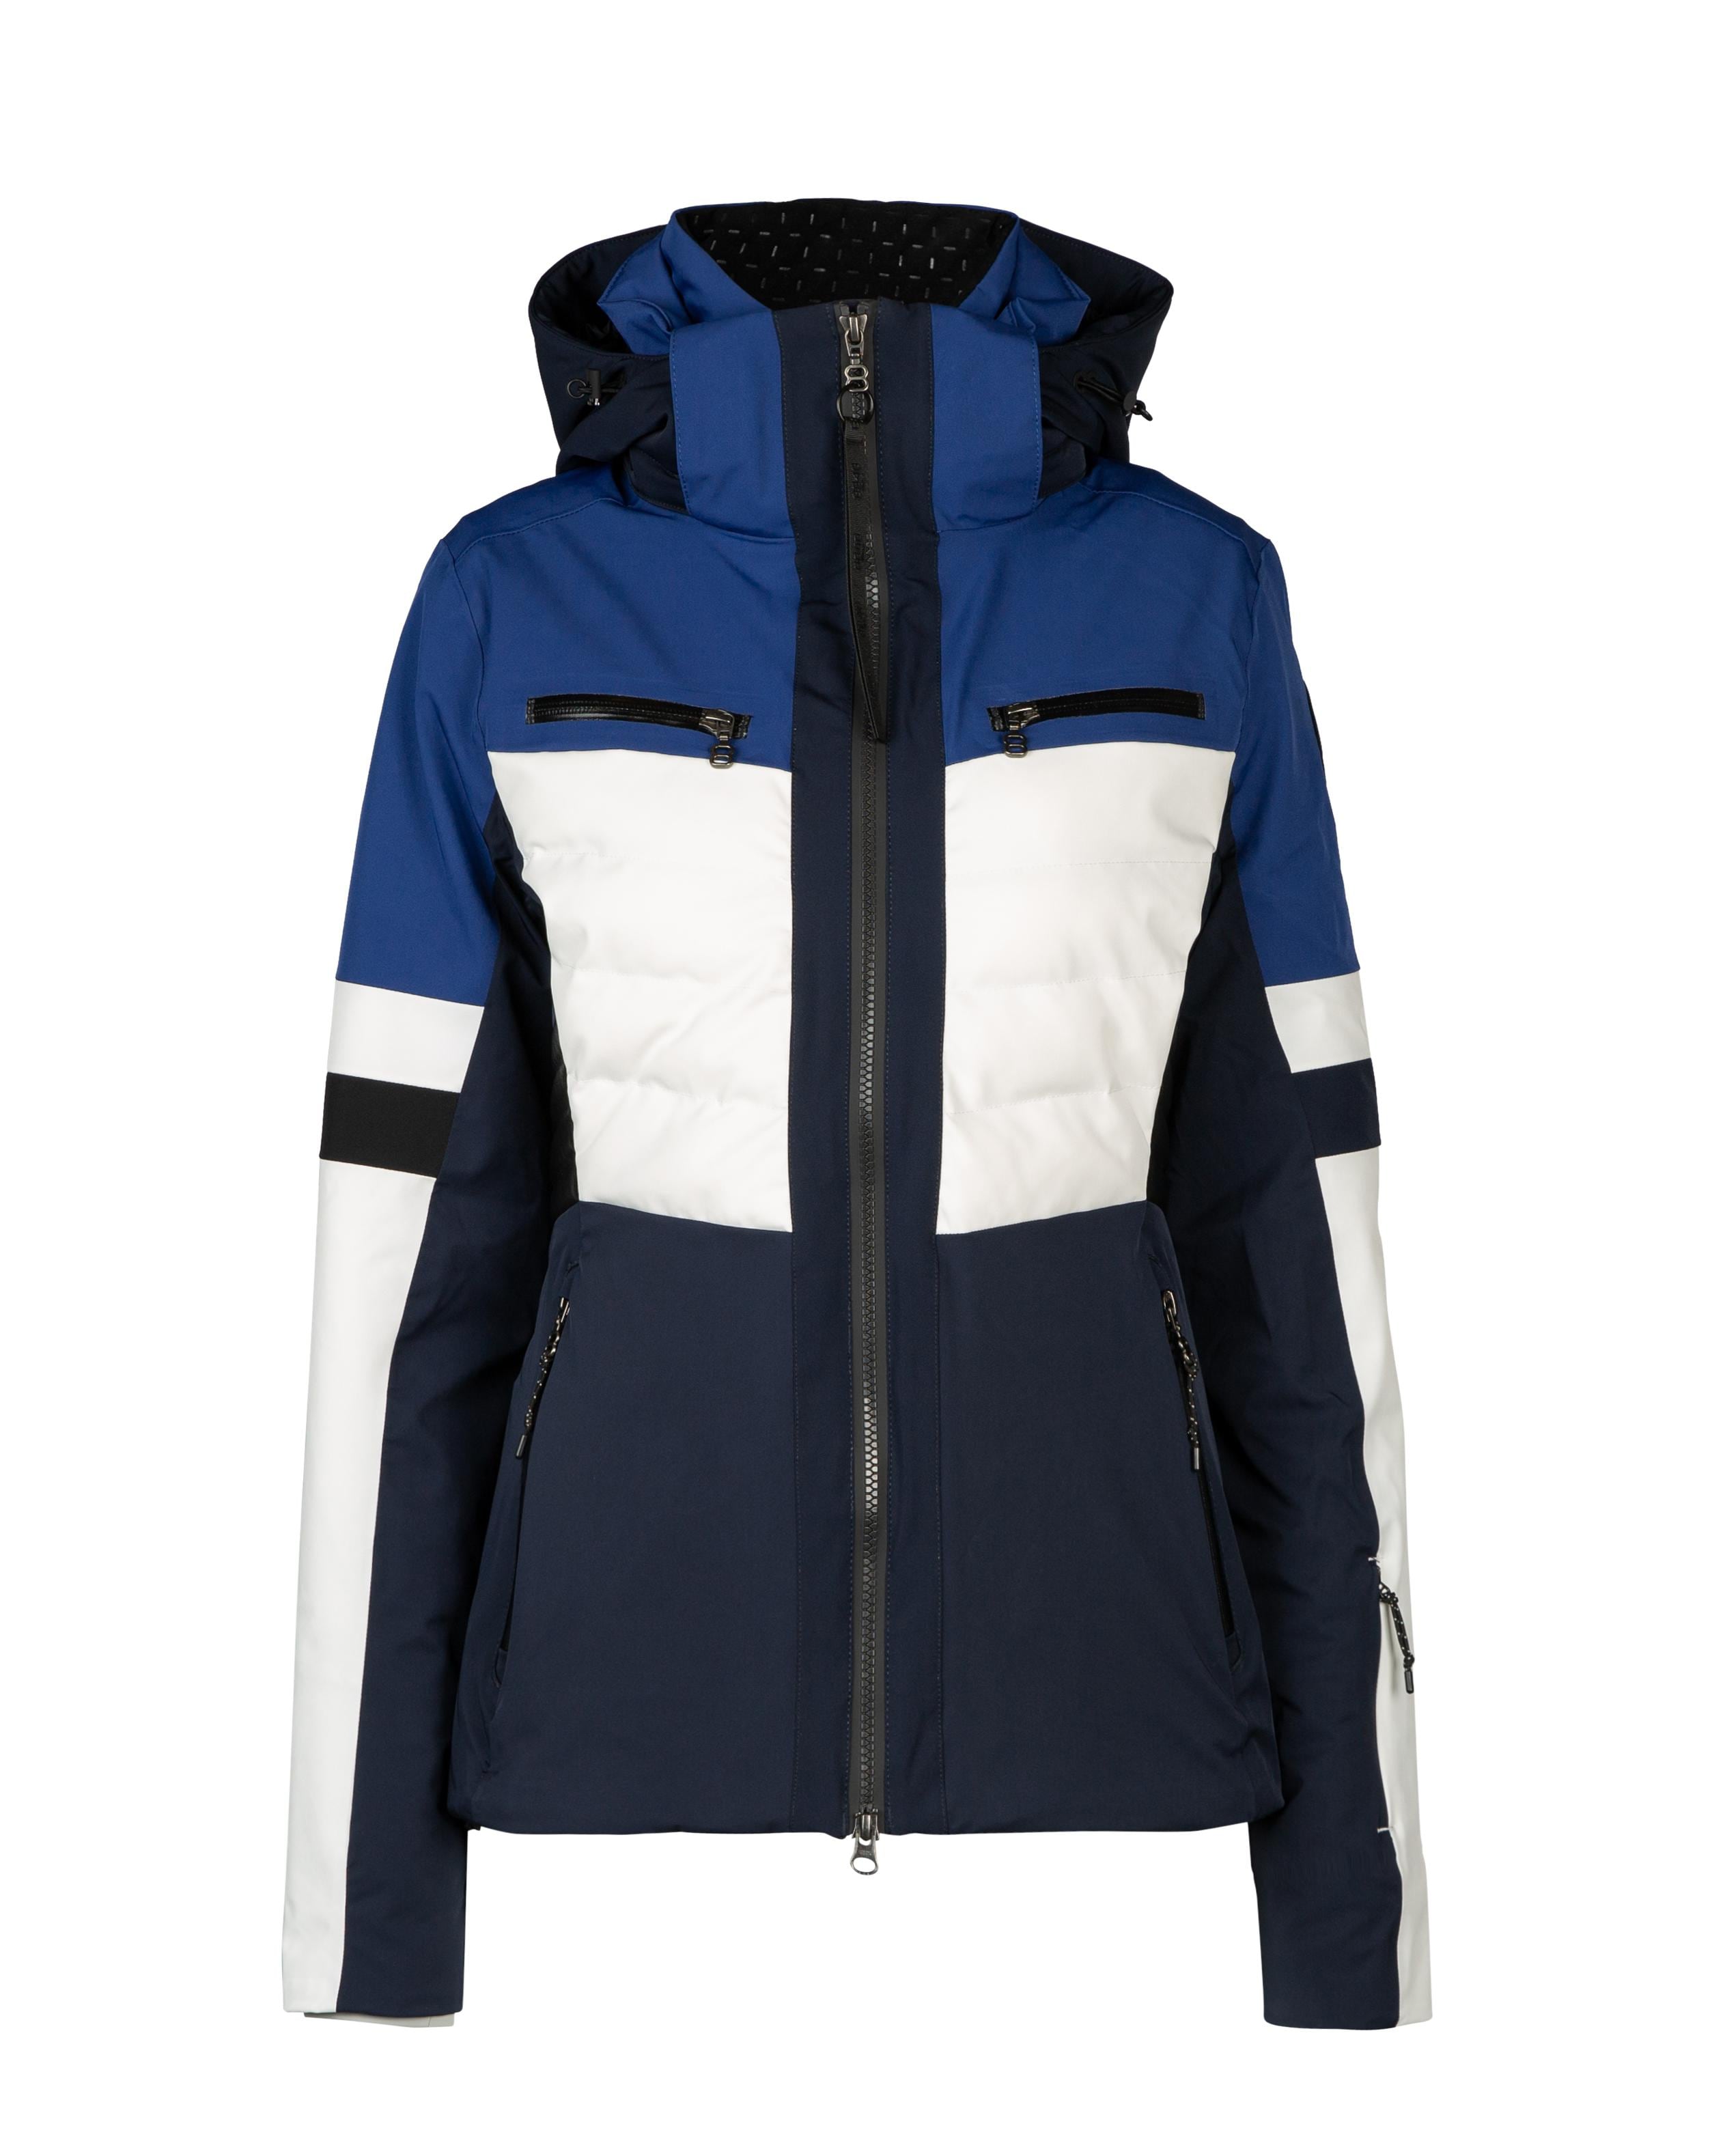 Zena W Jacket Navy - Dunkelblaue Ski Jacke Damen